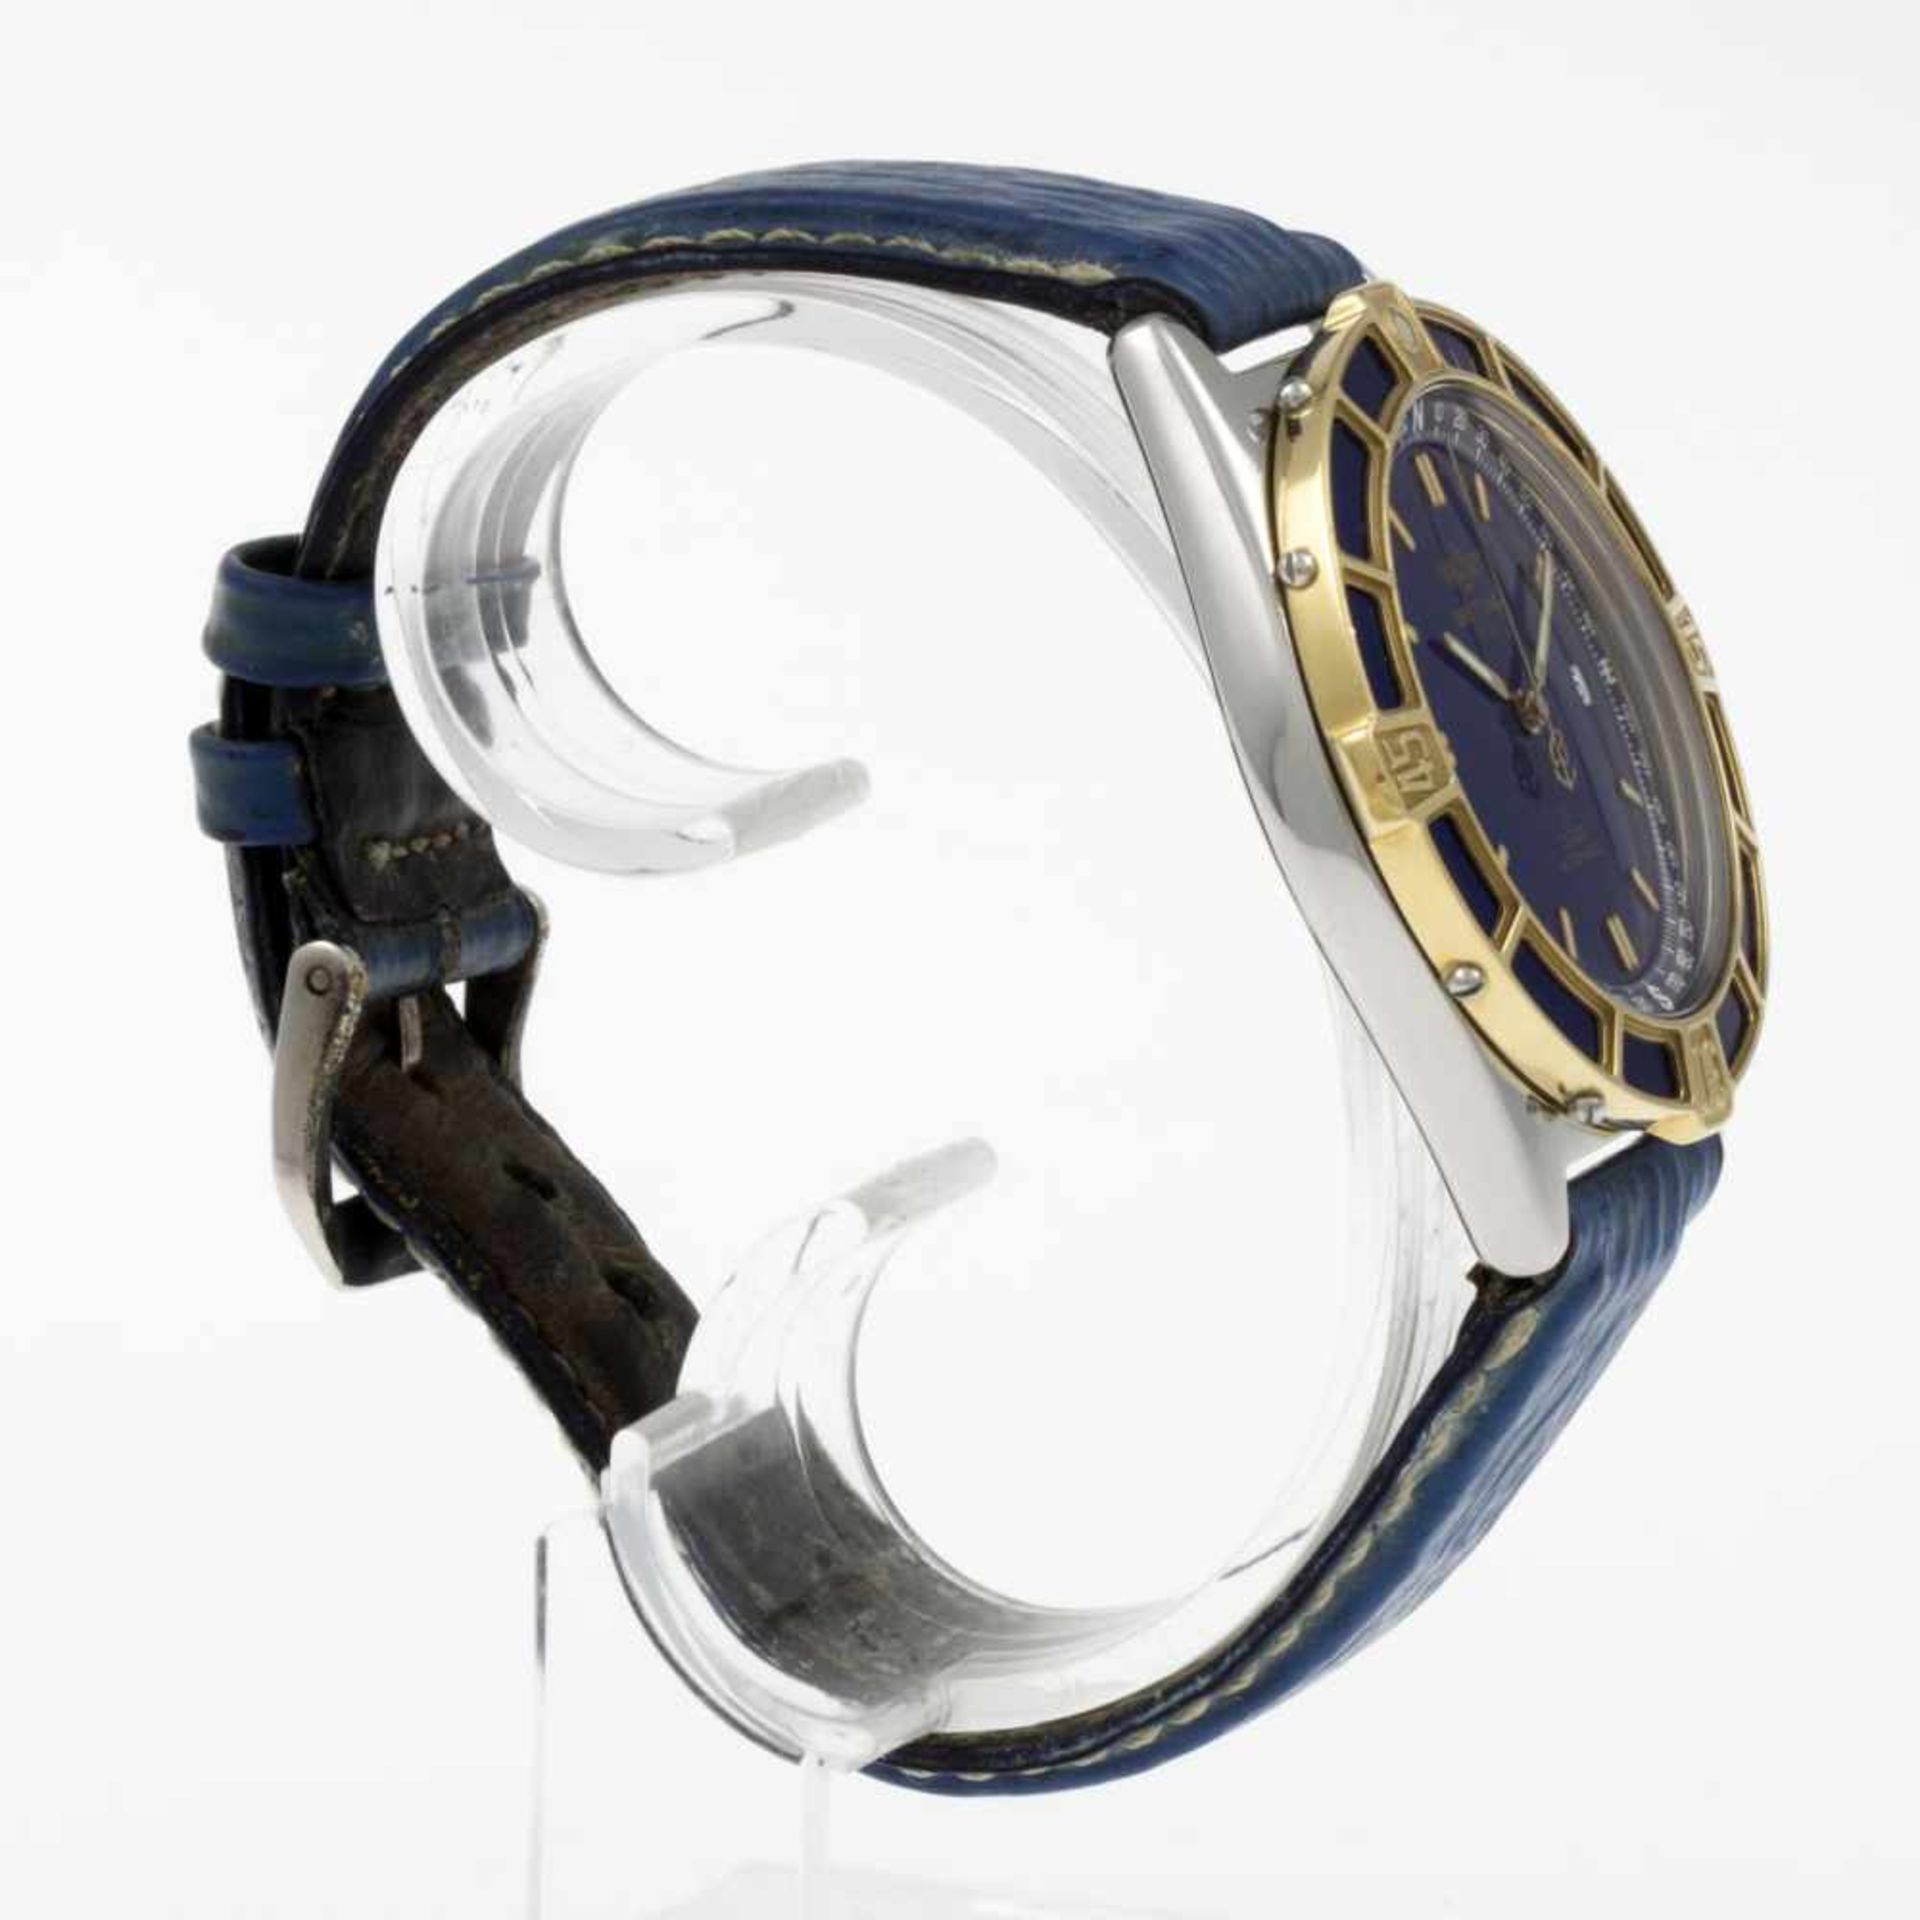 Breitling-Armbanduhr J ClassStahlgehäuse. Einseitig drehbare Lünette aus Gelbgold mit Segmenten - Bild 3 aus 4